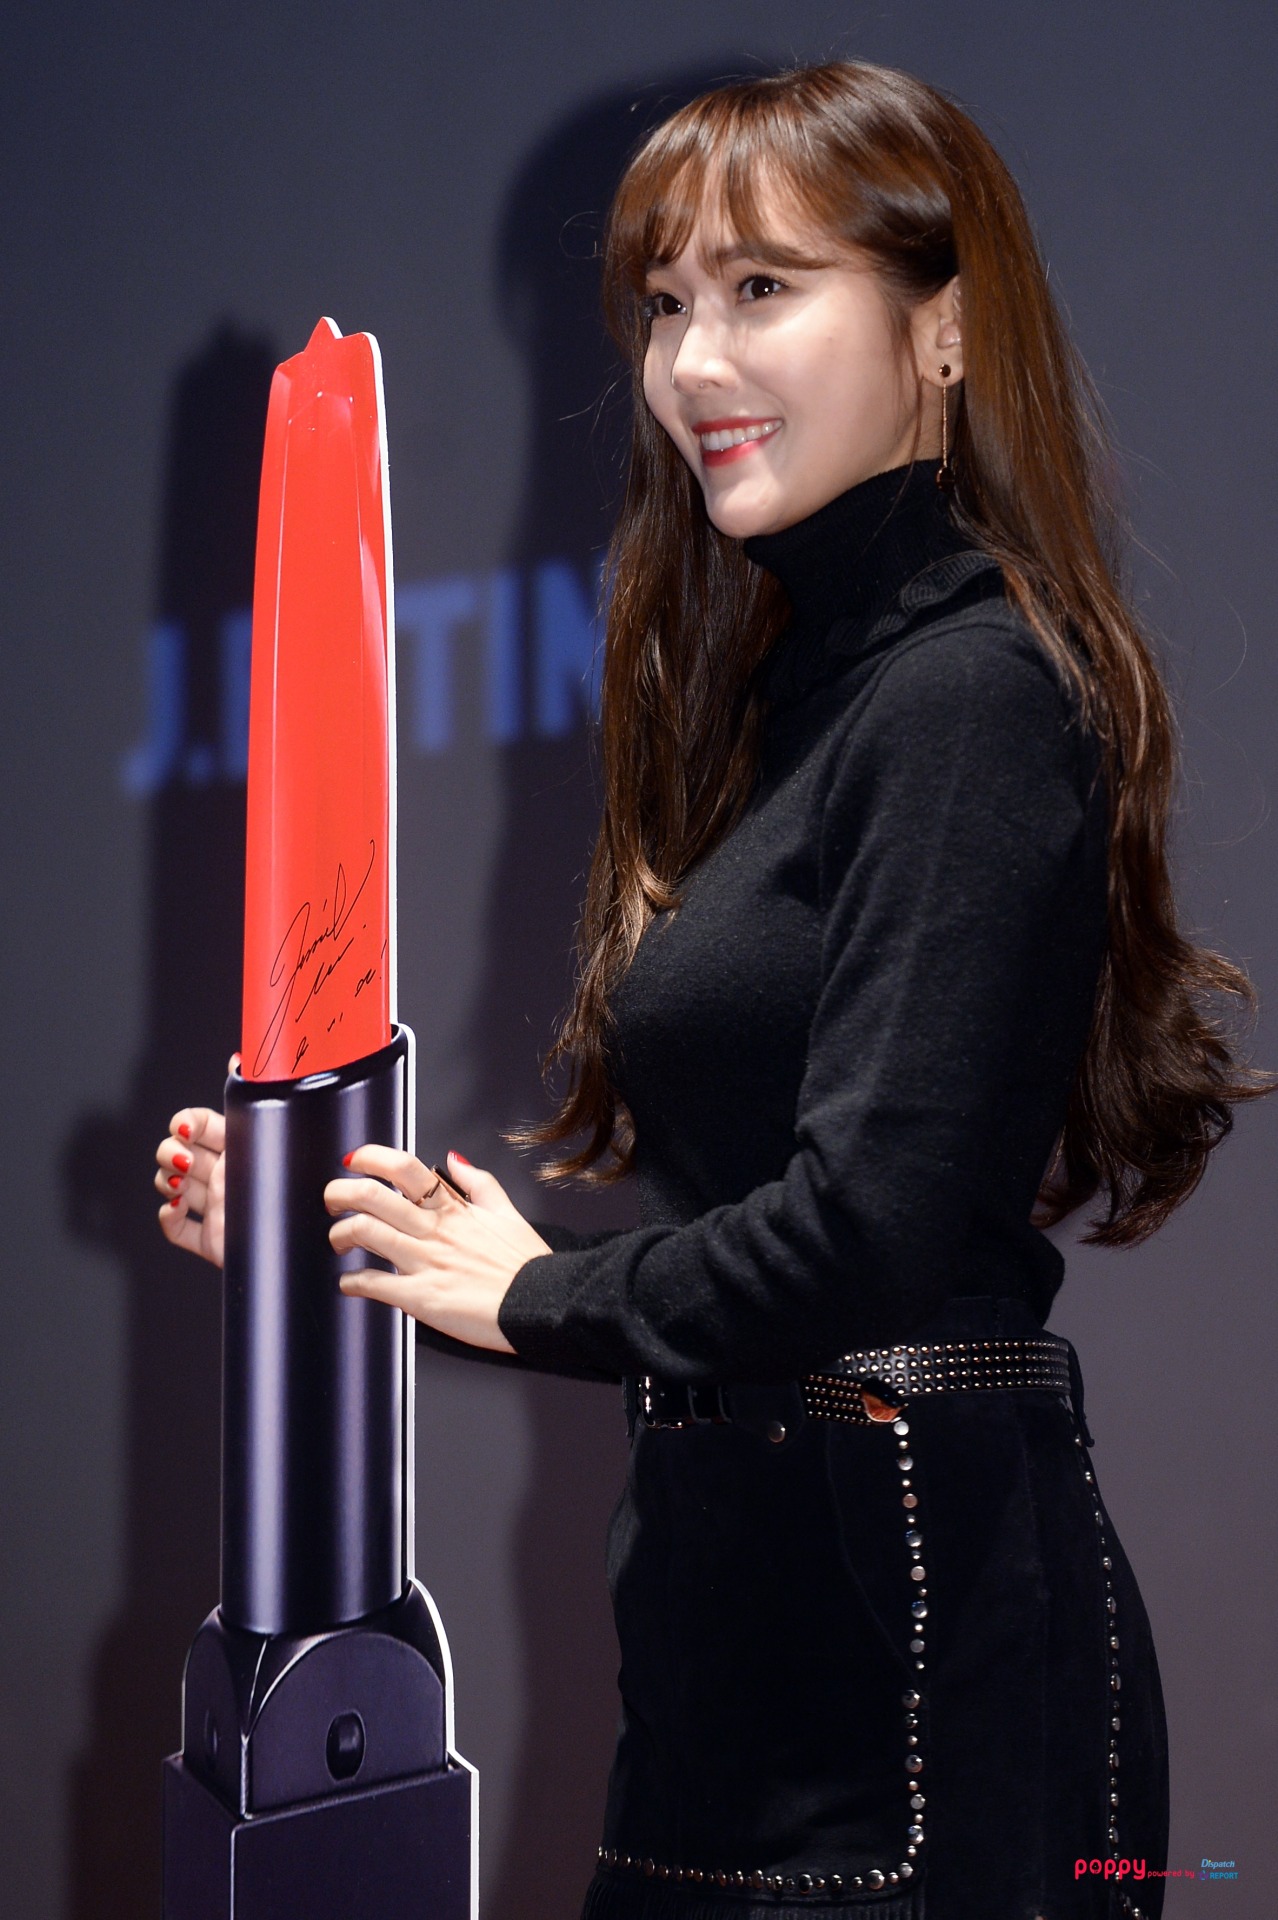 [PIC][07-11-2015]Jessica tham dự buổi Fansign cho dòng mỹ phẩm "J.ESTINA RED" tại "Myeongdong Lotte Cinema" vào chiều nay - Page 2 Tumblr_nxgph01KzZ1tuu6bfo4_1280